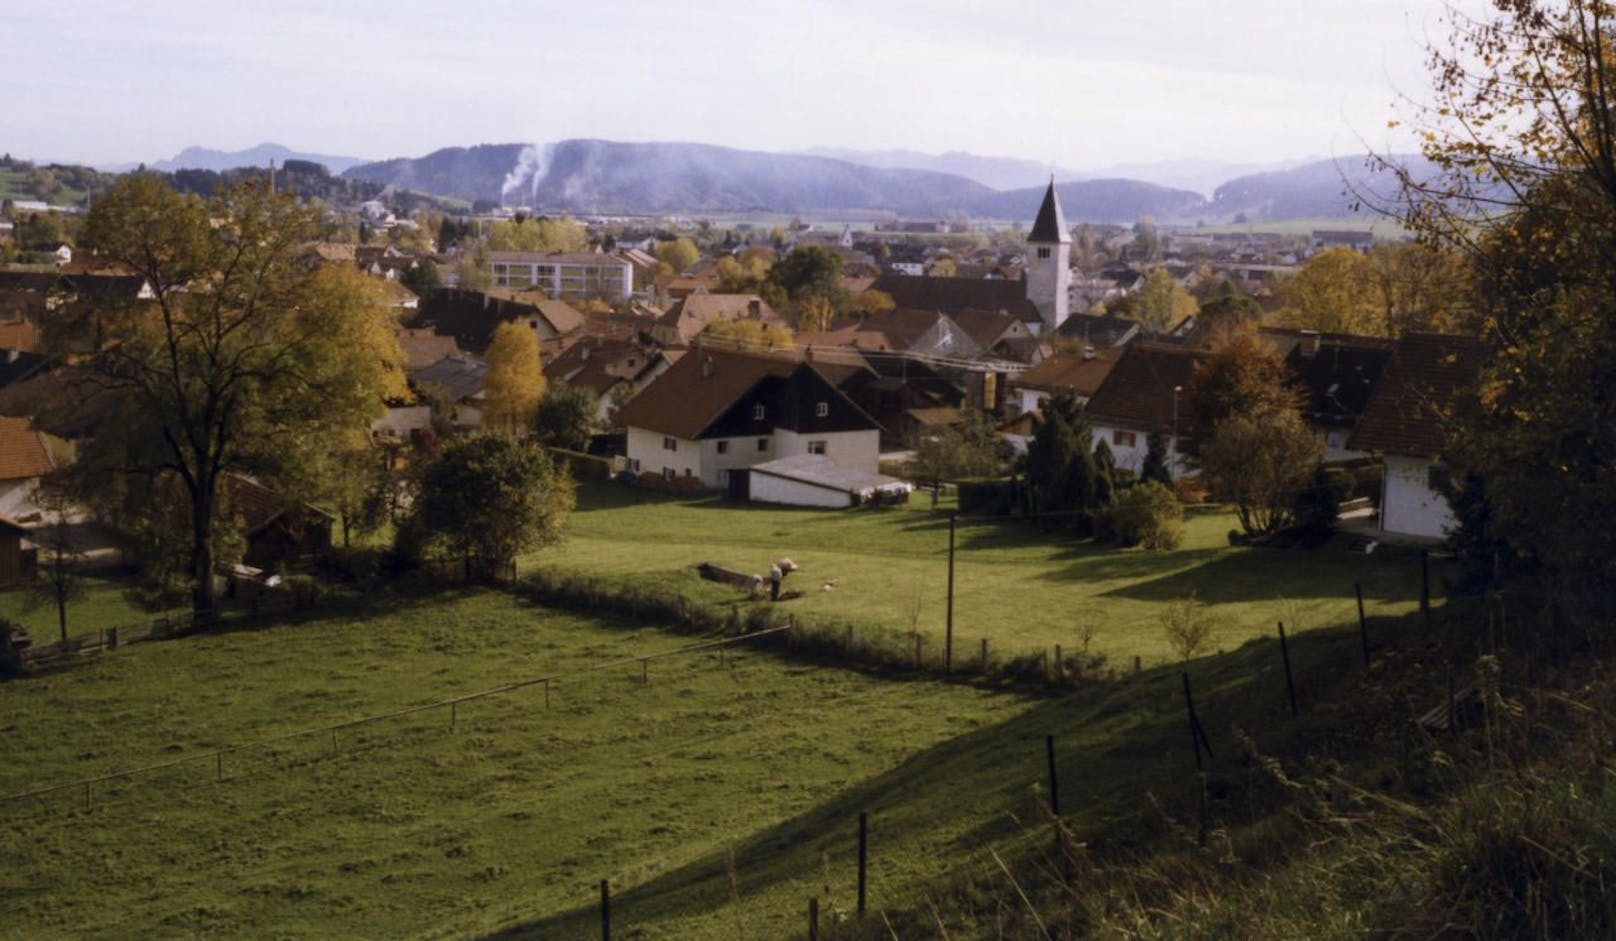 Blick auf die Ortschaft Peiting in Bayern, Deutschland. Archivbild